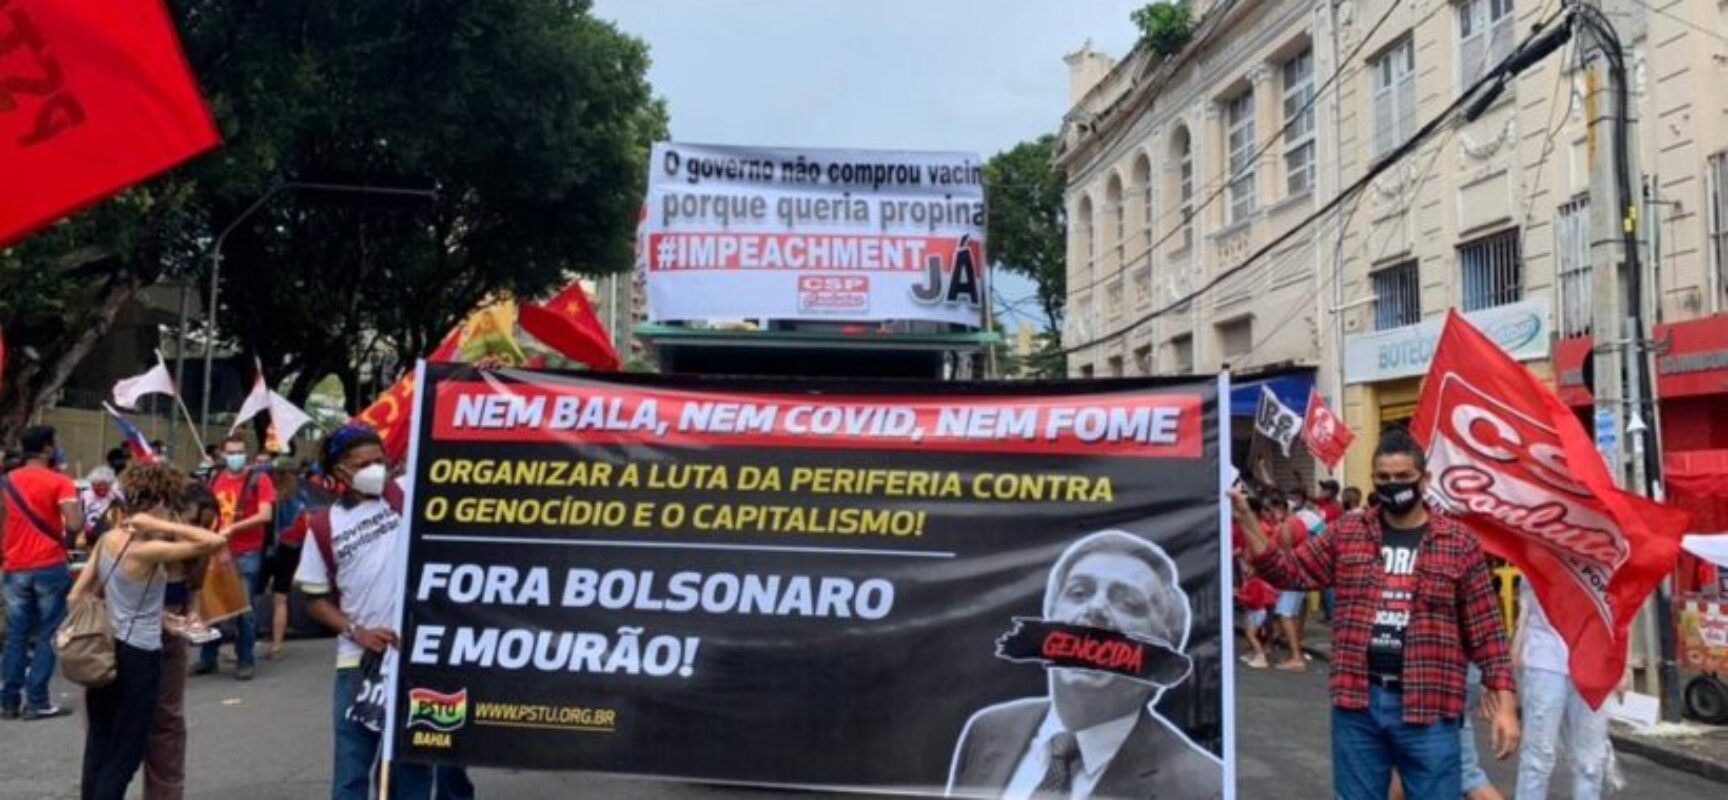 Manifestantes protestam contra Bolsonaro e a favor da vacina na Bahia